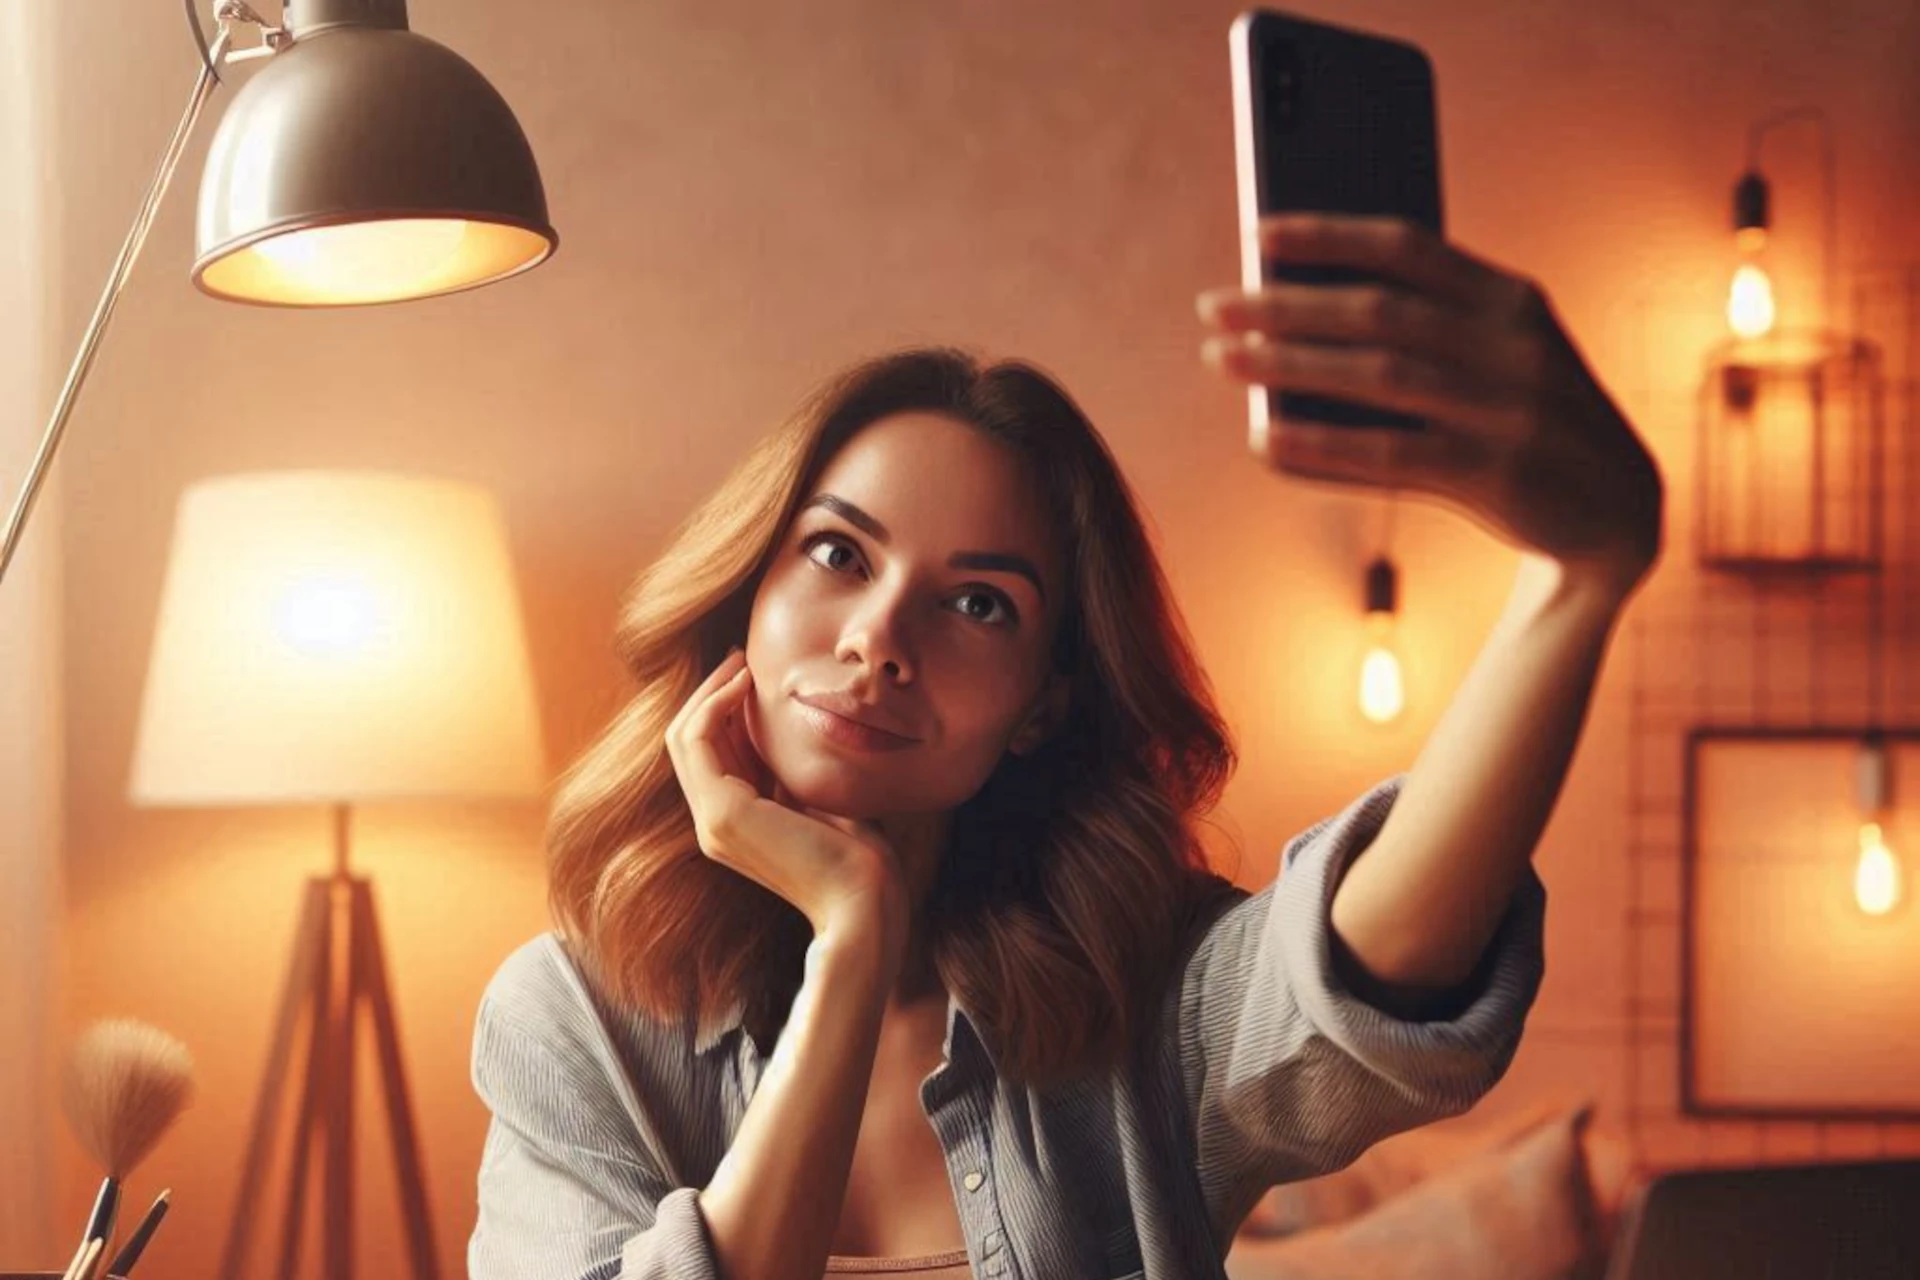 O excesso de selfies e o narcisismo